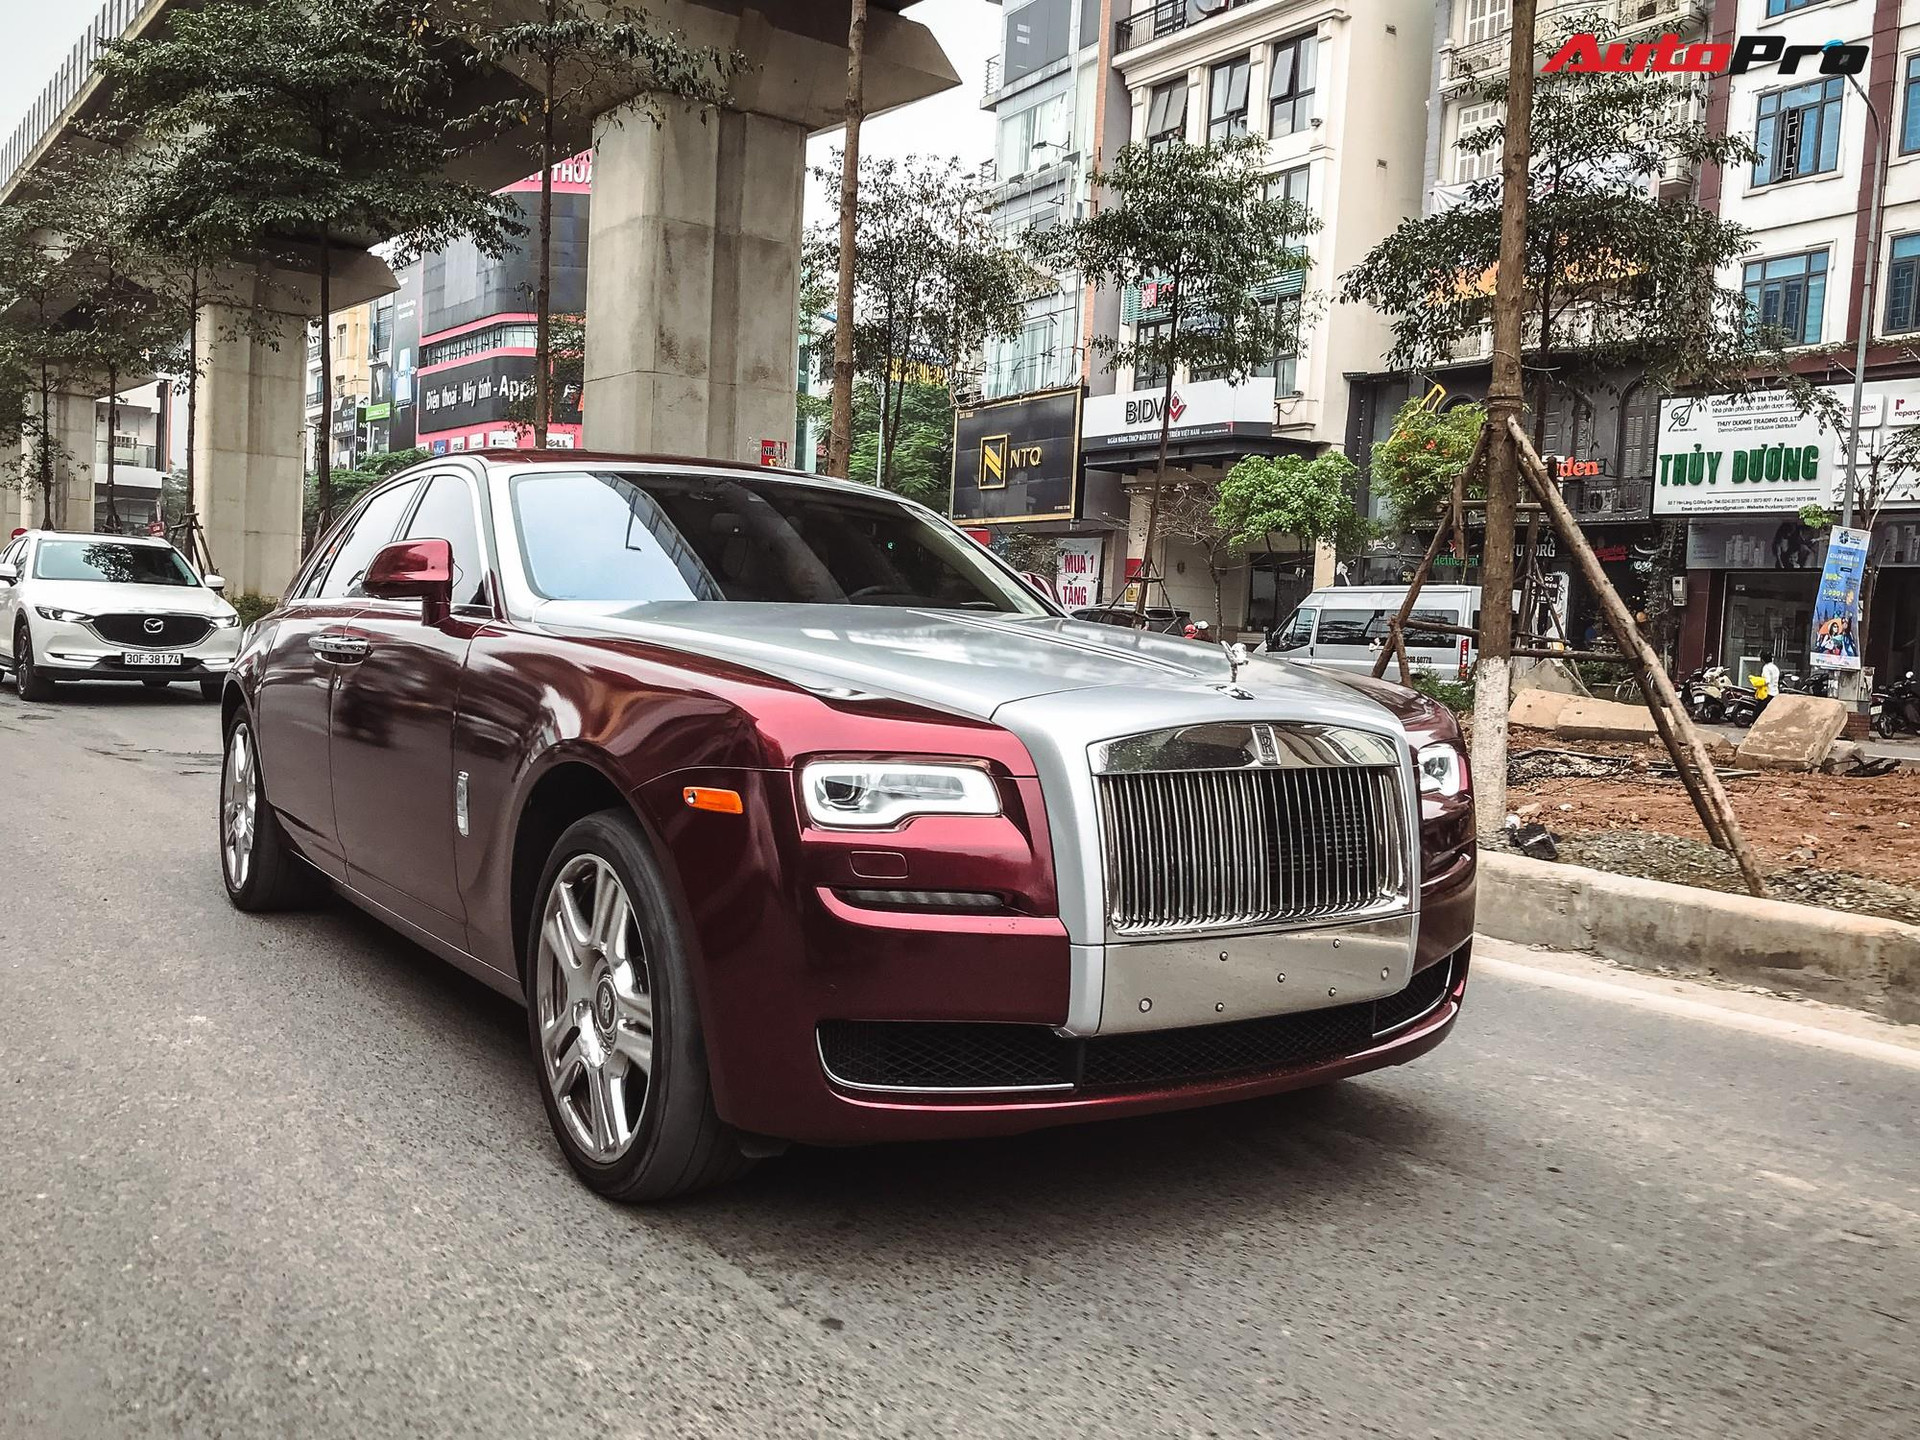 Hãng xe sang Rolls-Royce nổi tiếng ghi nhận doanh số bán hàng kỉ lục trong năm 2022, giá trung bình tăng hơn 500.000 USD/xe nhờ chi tiết này - Ảnh 1.